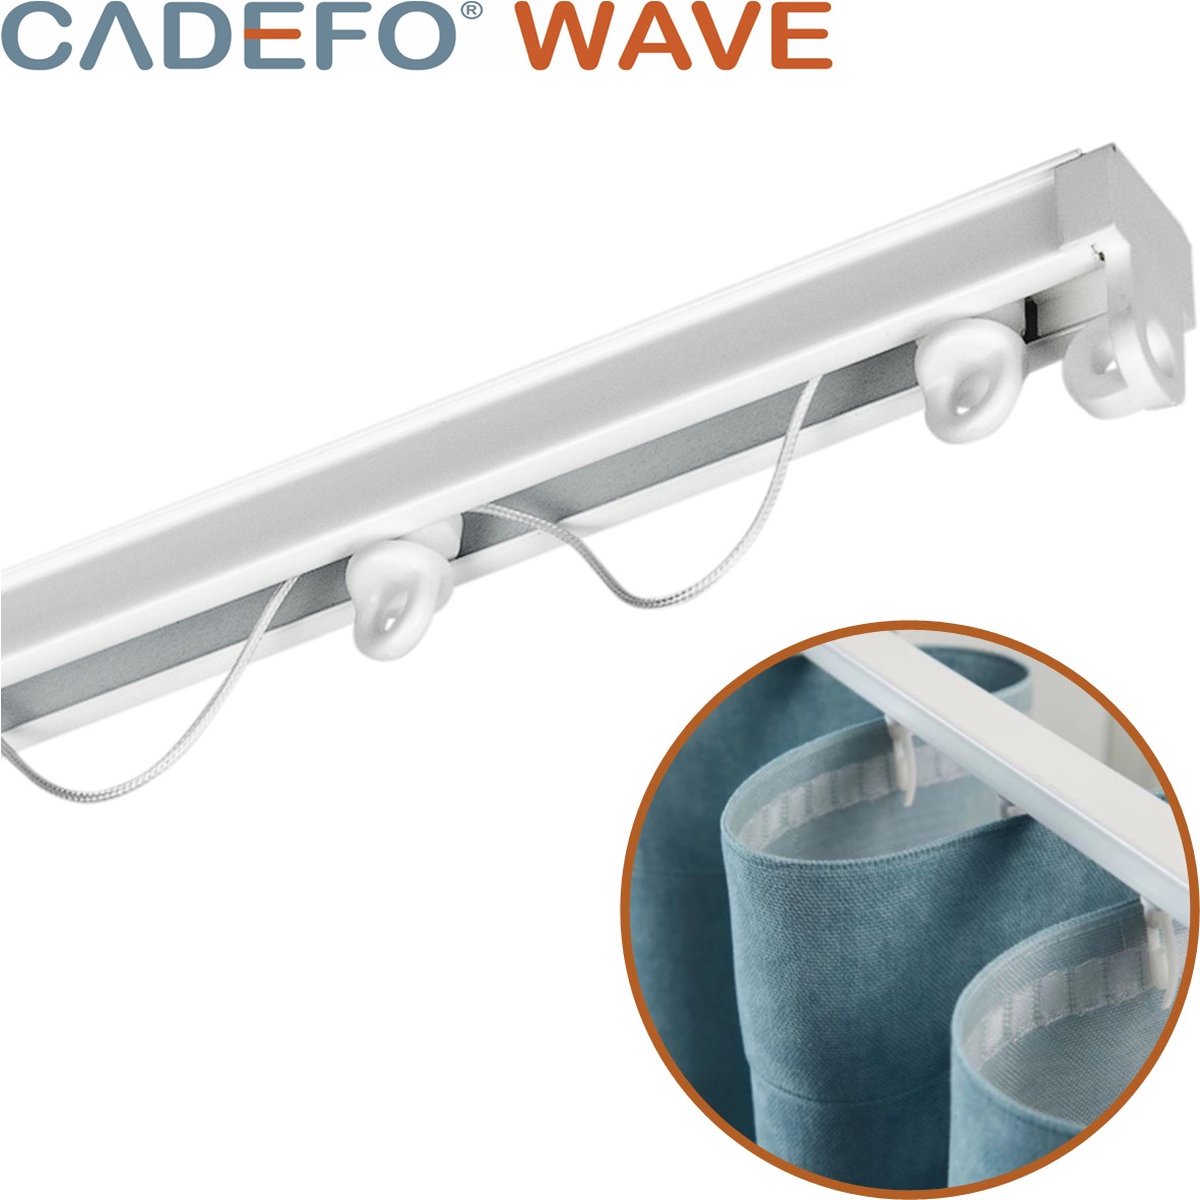 CADEFO WAVE (301 - 350 cm) Gordijnrails - Compleet op maat! - UIT 1 STUK - Leverbaar tot 6 meter - Plafondbevestiging - Lengte 336 cm